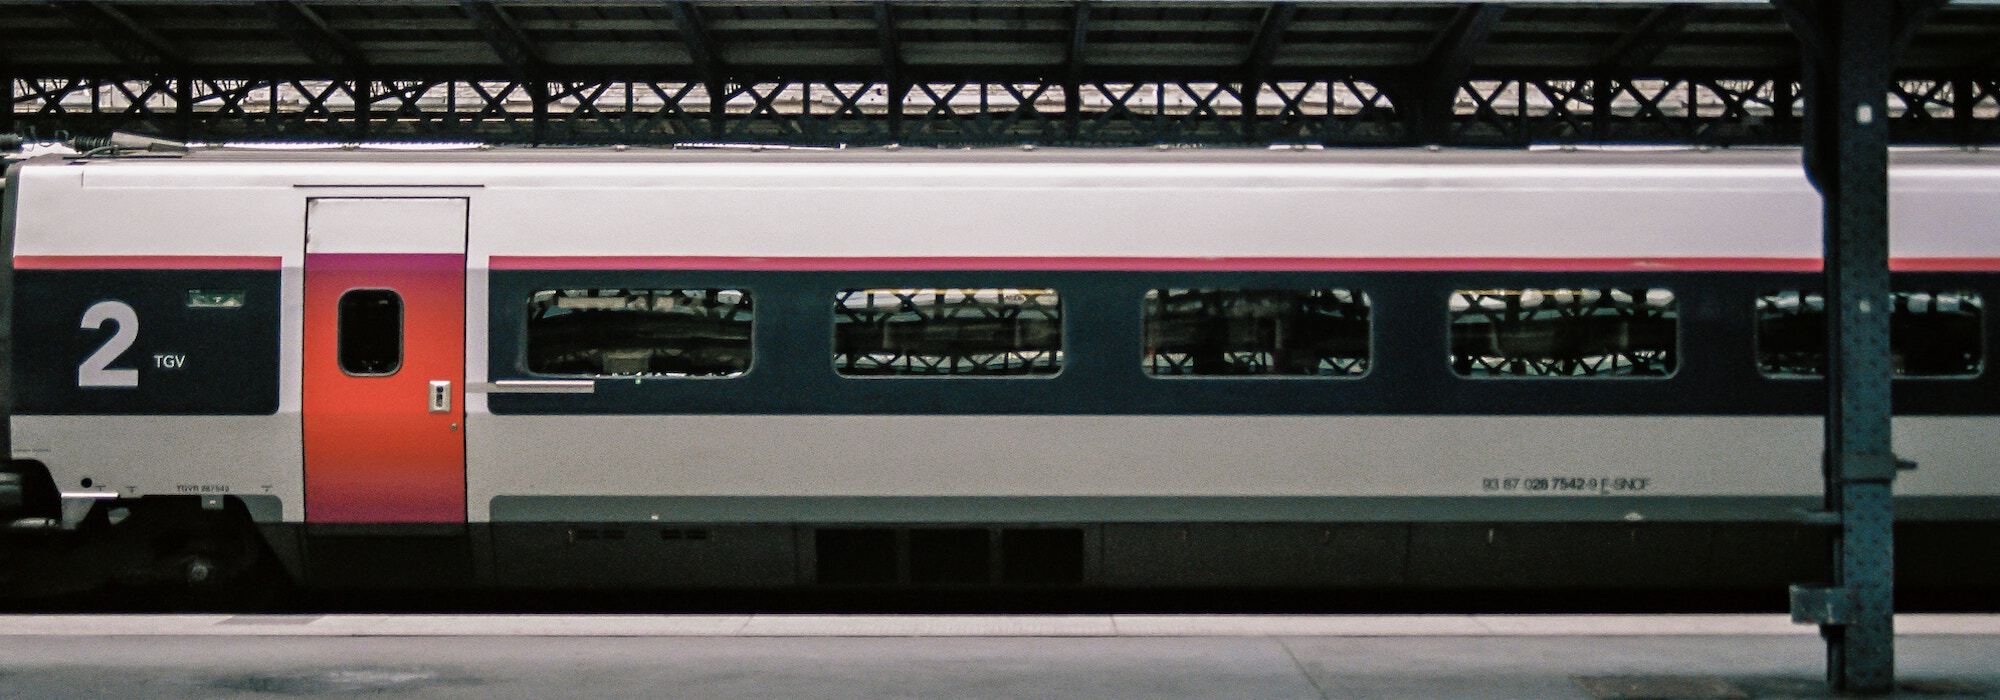 SNCF-Bandeau-2000x700